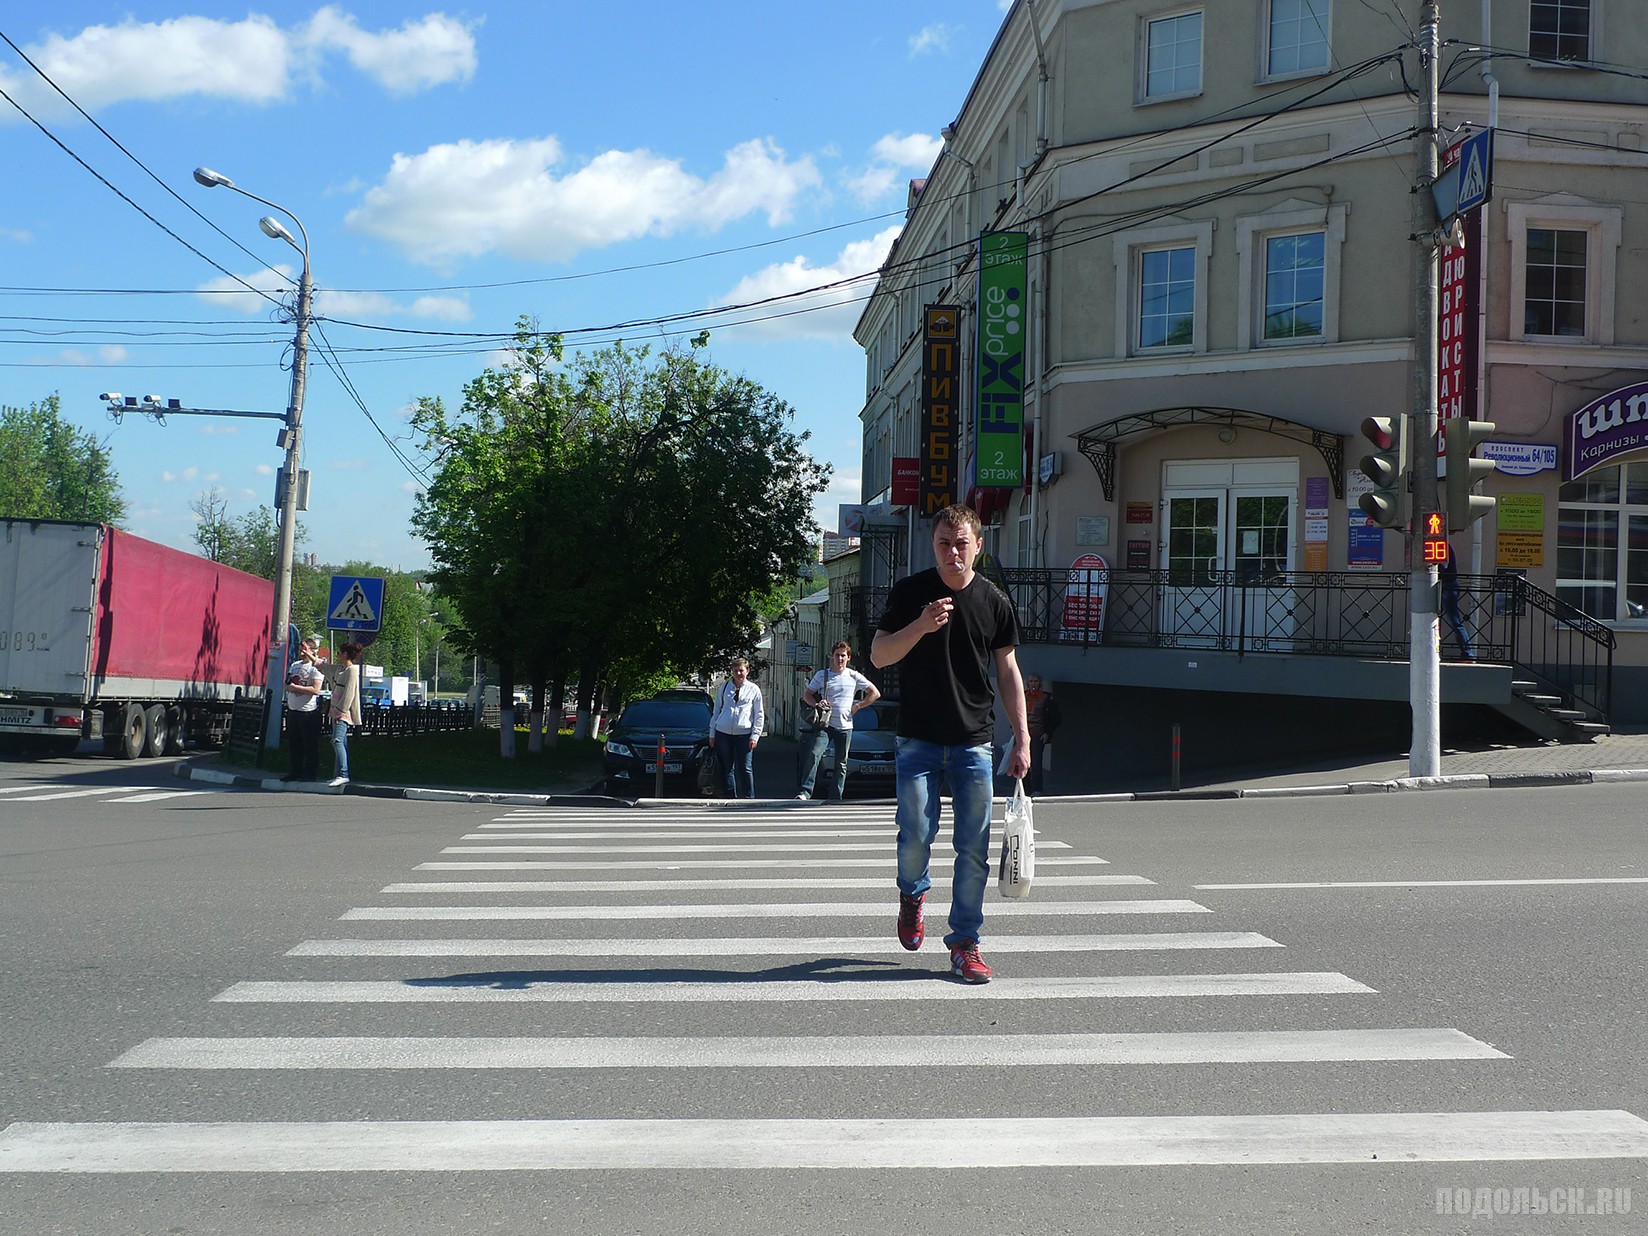 Переход на красный пешеход. Светофор для людей. Человек переходит дорогу. Человек переходит на красный свет. Светофор для пешеходов.